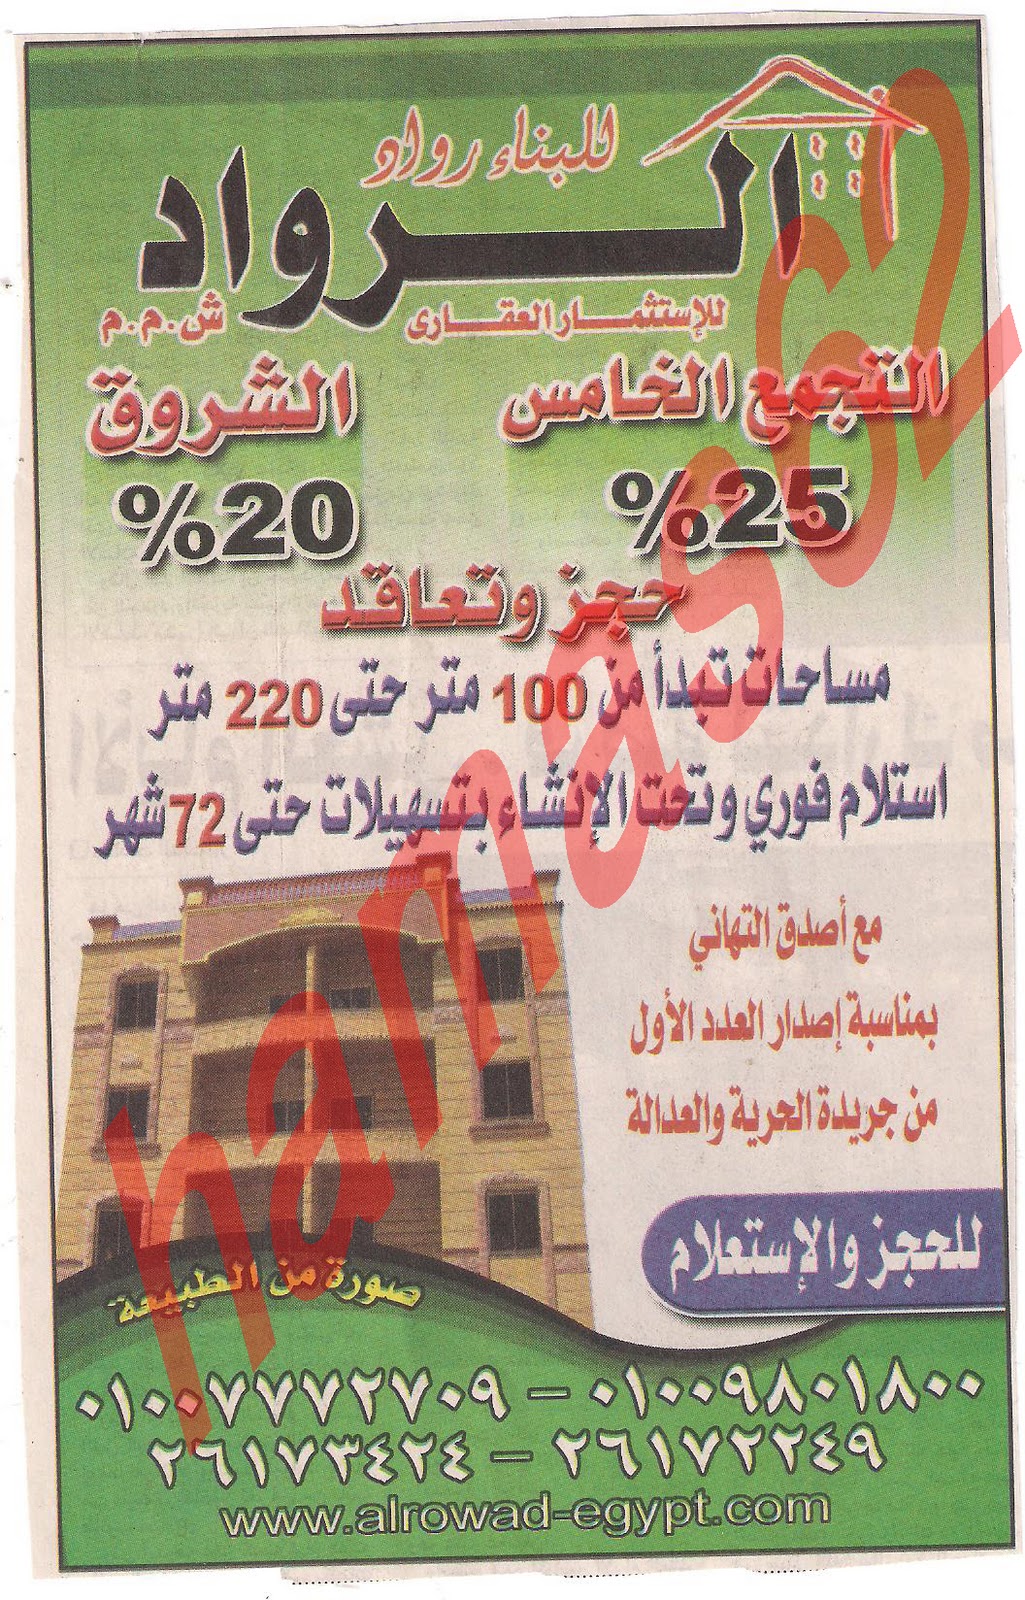 اعلانات جريدة الحرية والعدالة الجمعة 28\10\2011 Picture+022